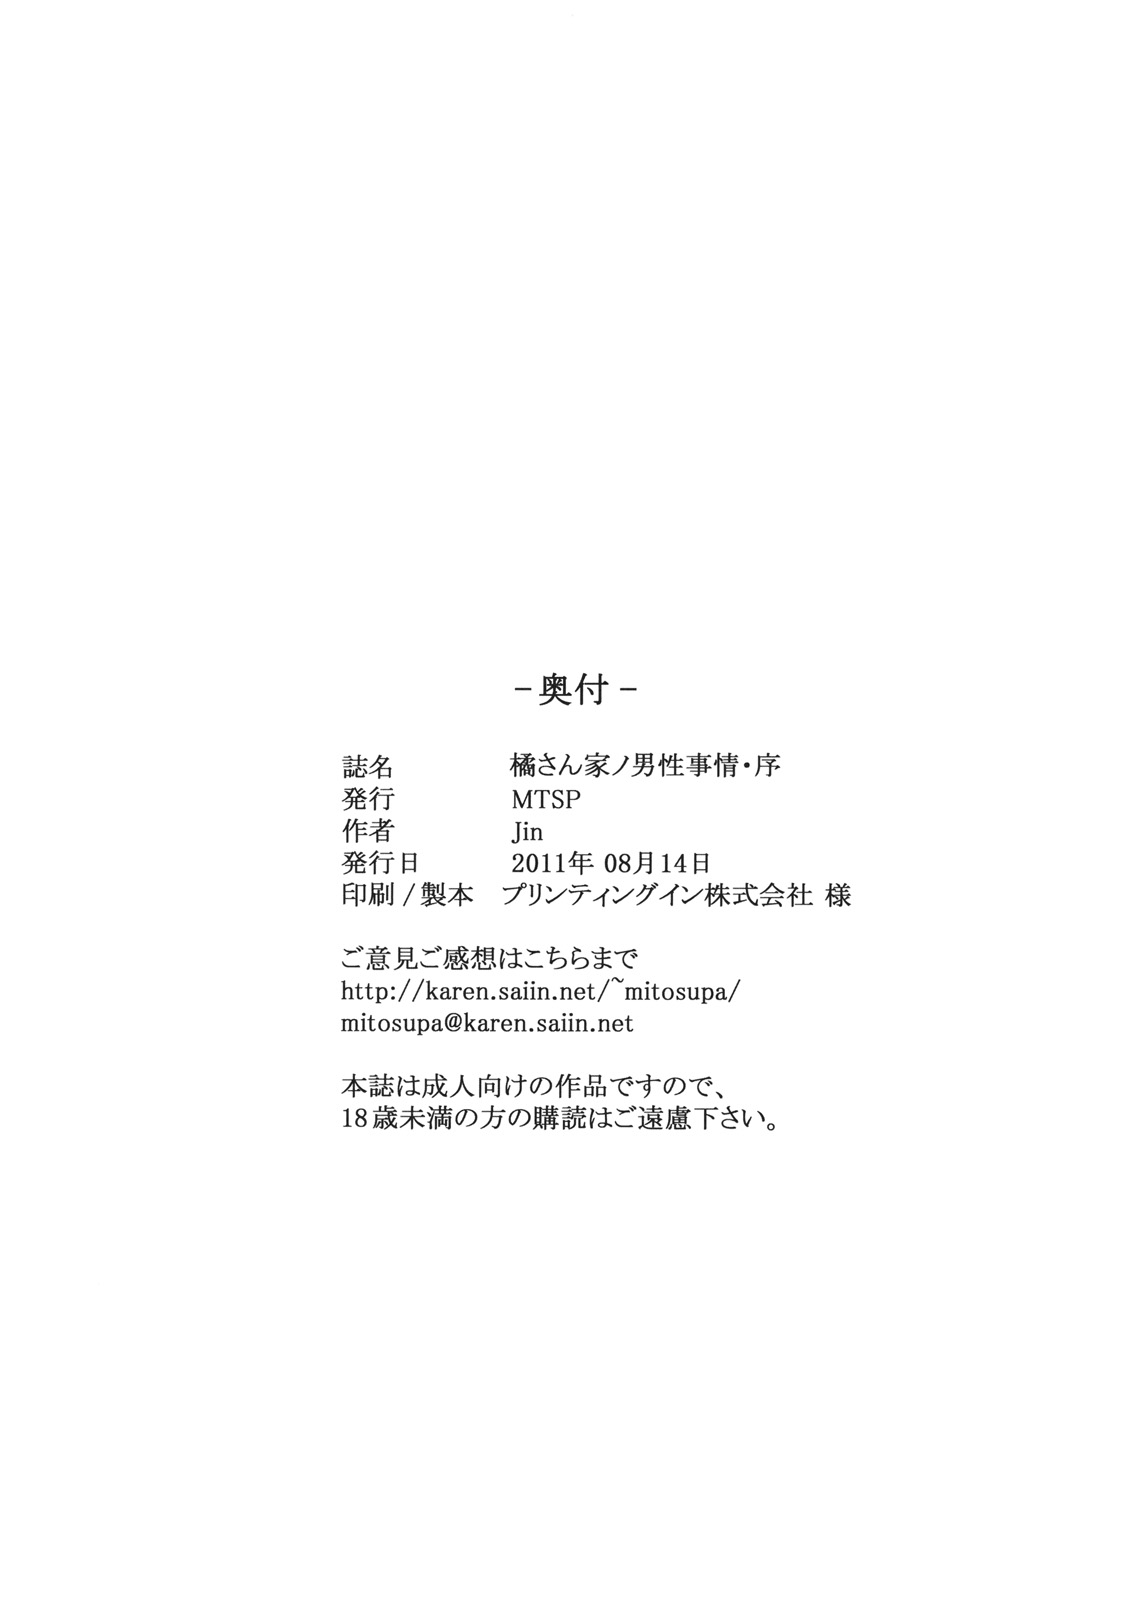 Tachibana01_0054.jpg